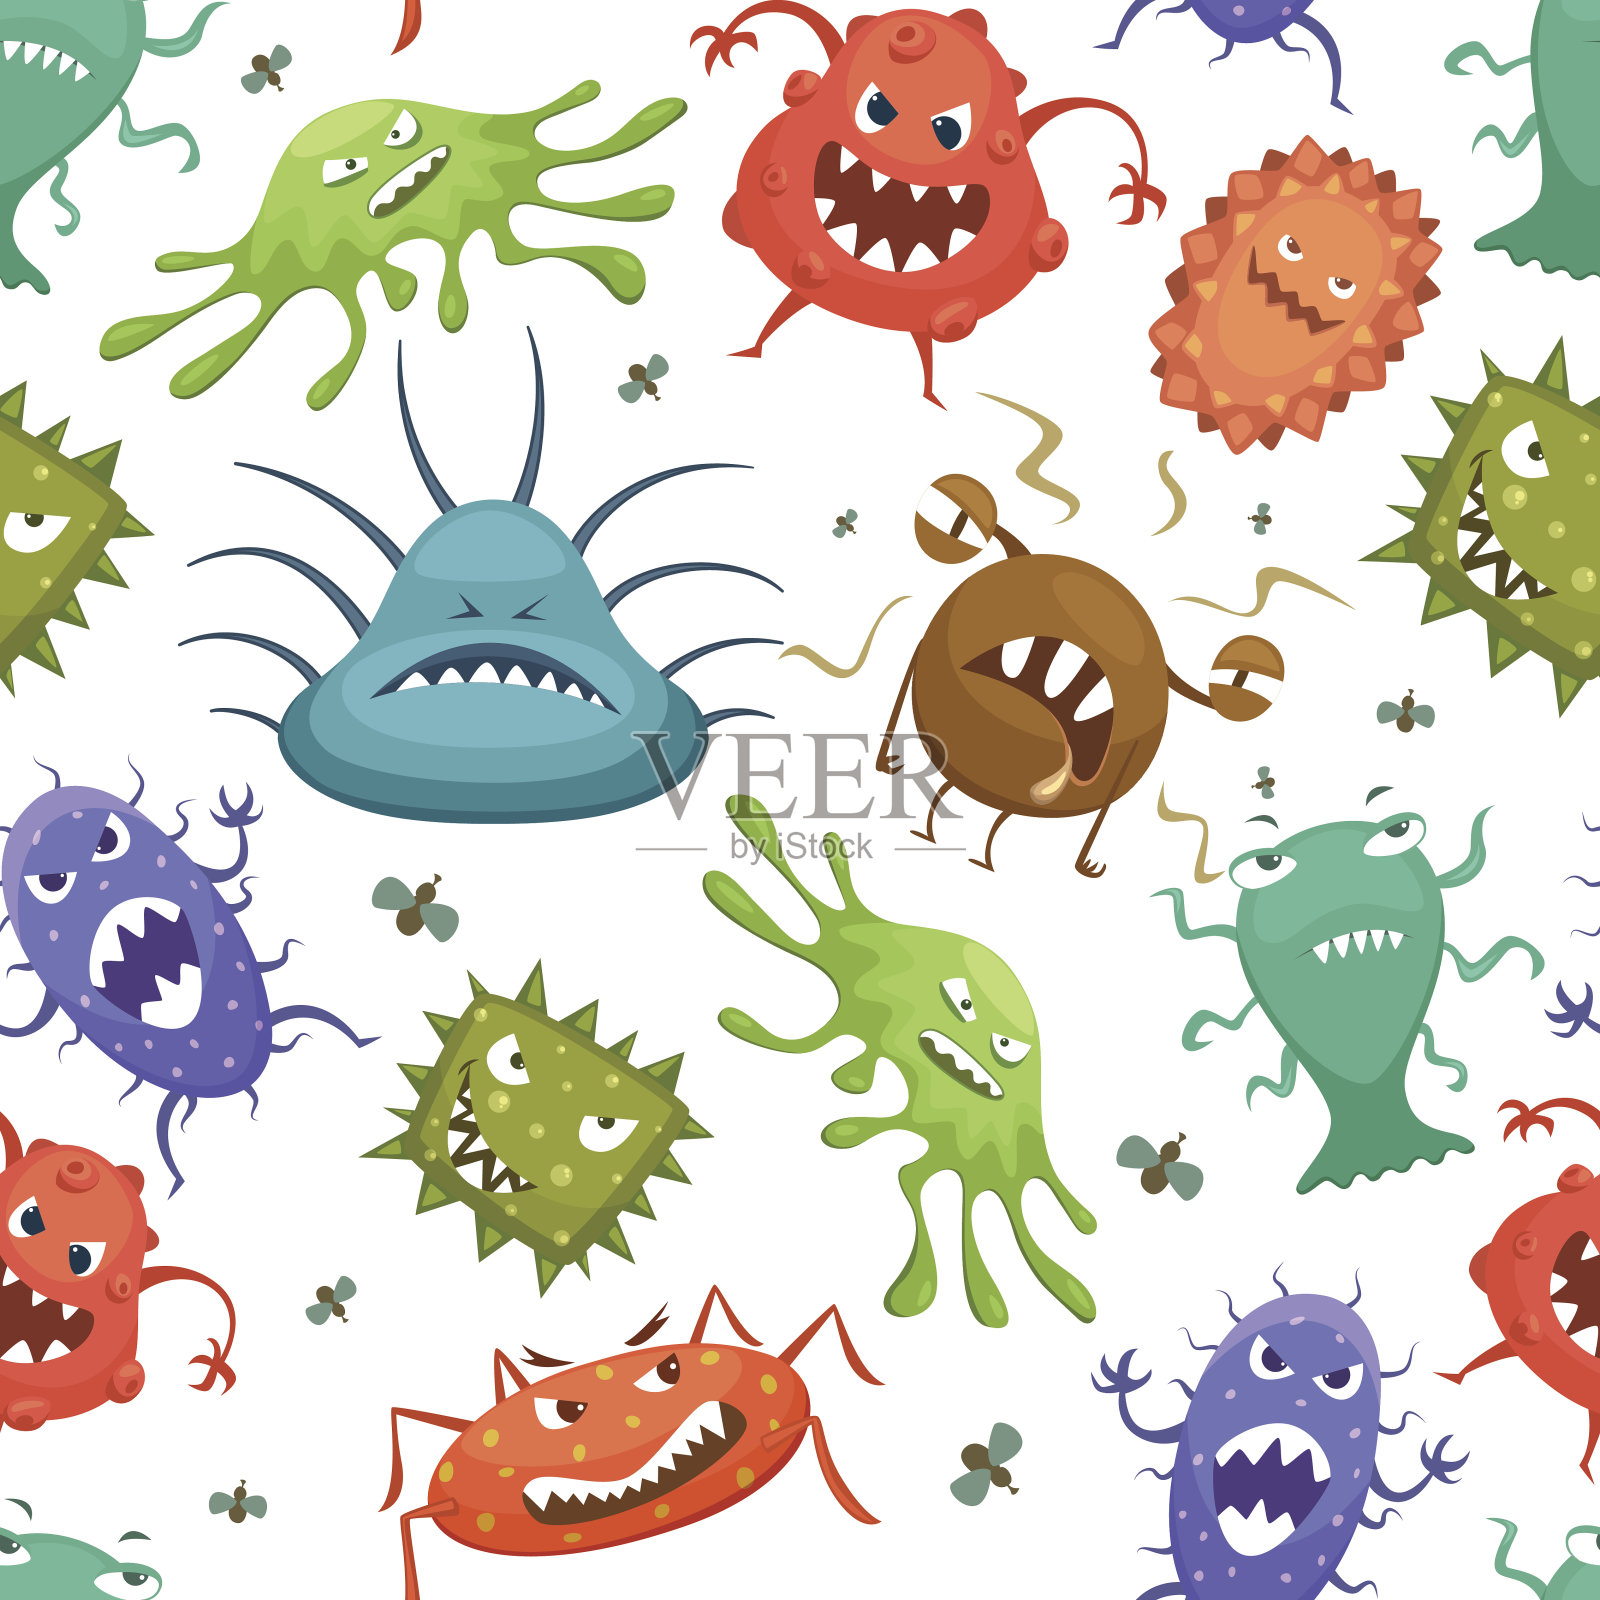 危险的。链球菌、乳酸菌、葡萄球菌等微生物卡通造型。向量无缝模式插画图片素材